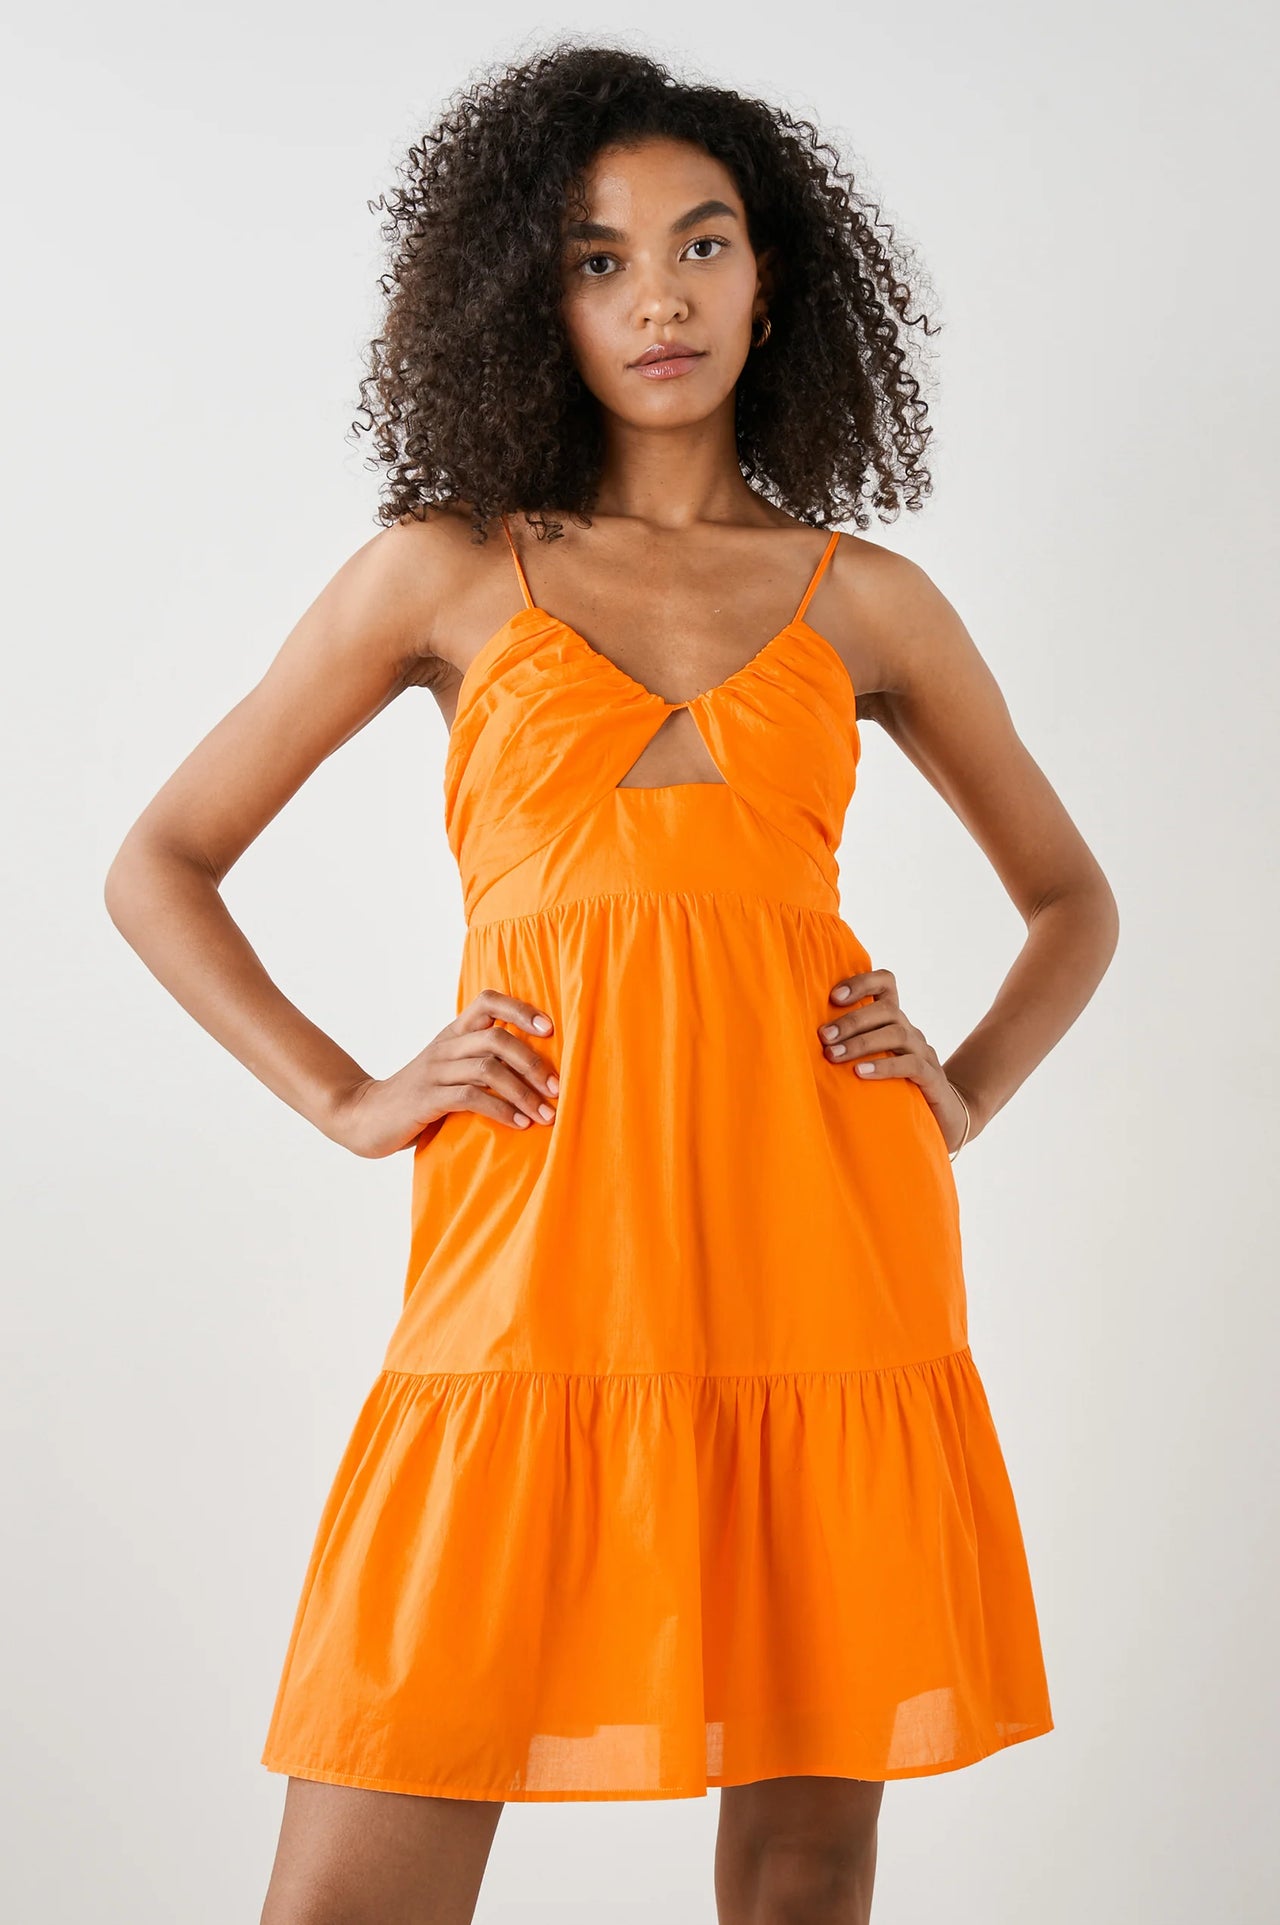 Chrissy Cut Out Sun Dress Tangerine, Mini Dress by Rails | LIT Boutique